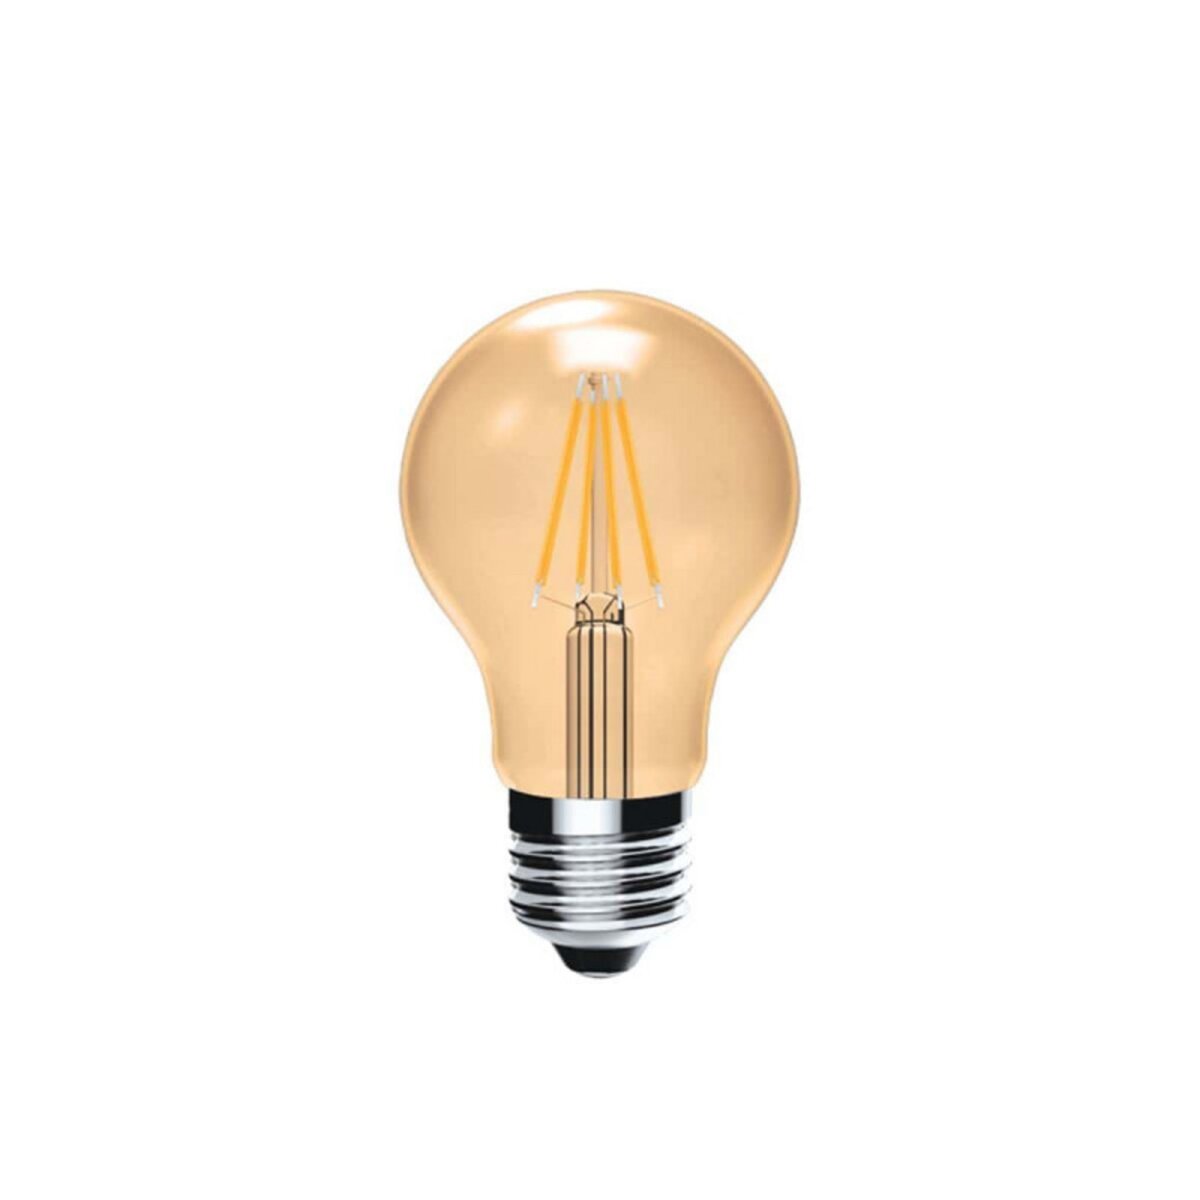  Ampoule LED Filament XXCELL Standard Ambré Vintage - E27 - 4W